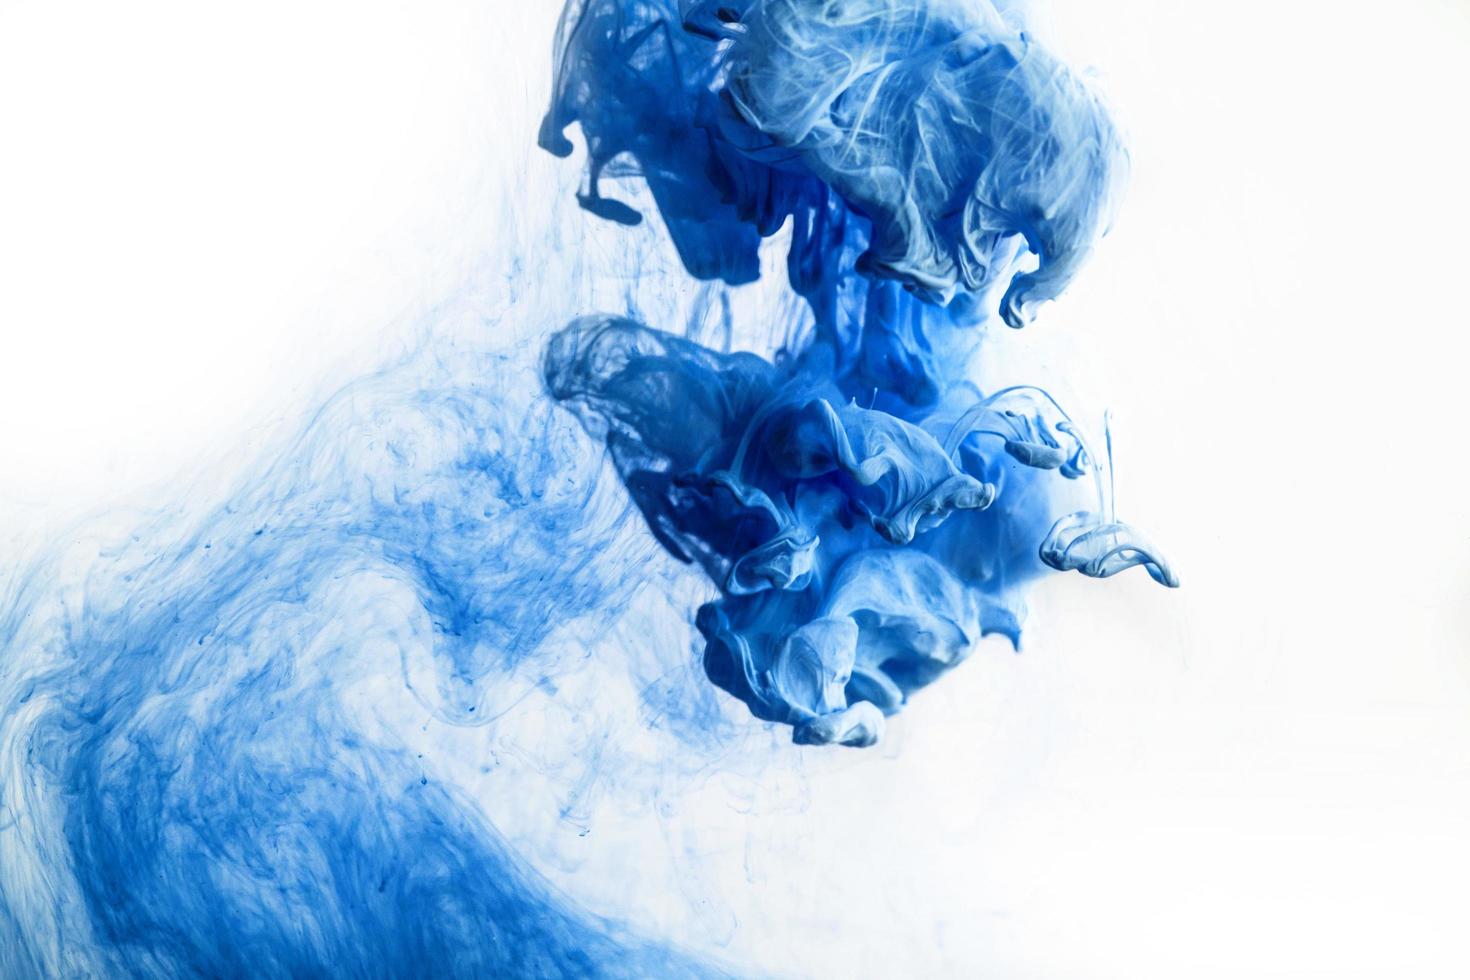 gota de tinta de color azul en el agua, tinta arremolinándose. imagen de abstracción para referencia de fondo o color. foto